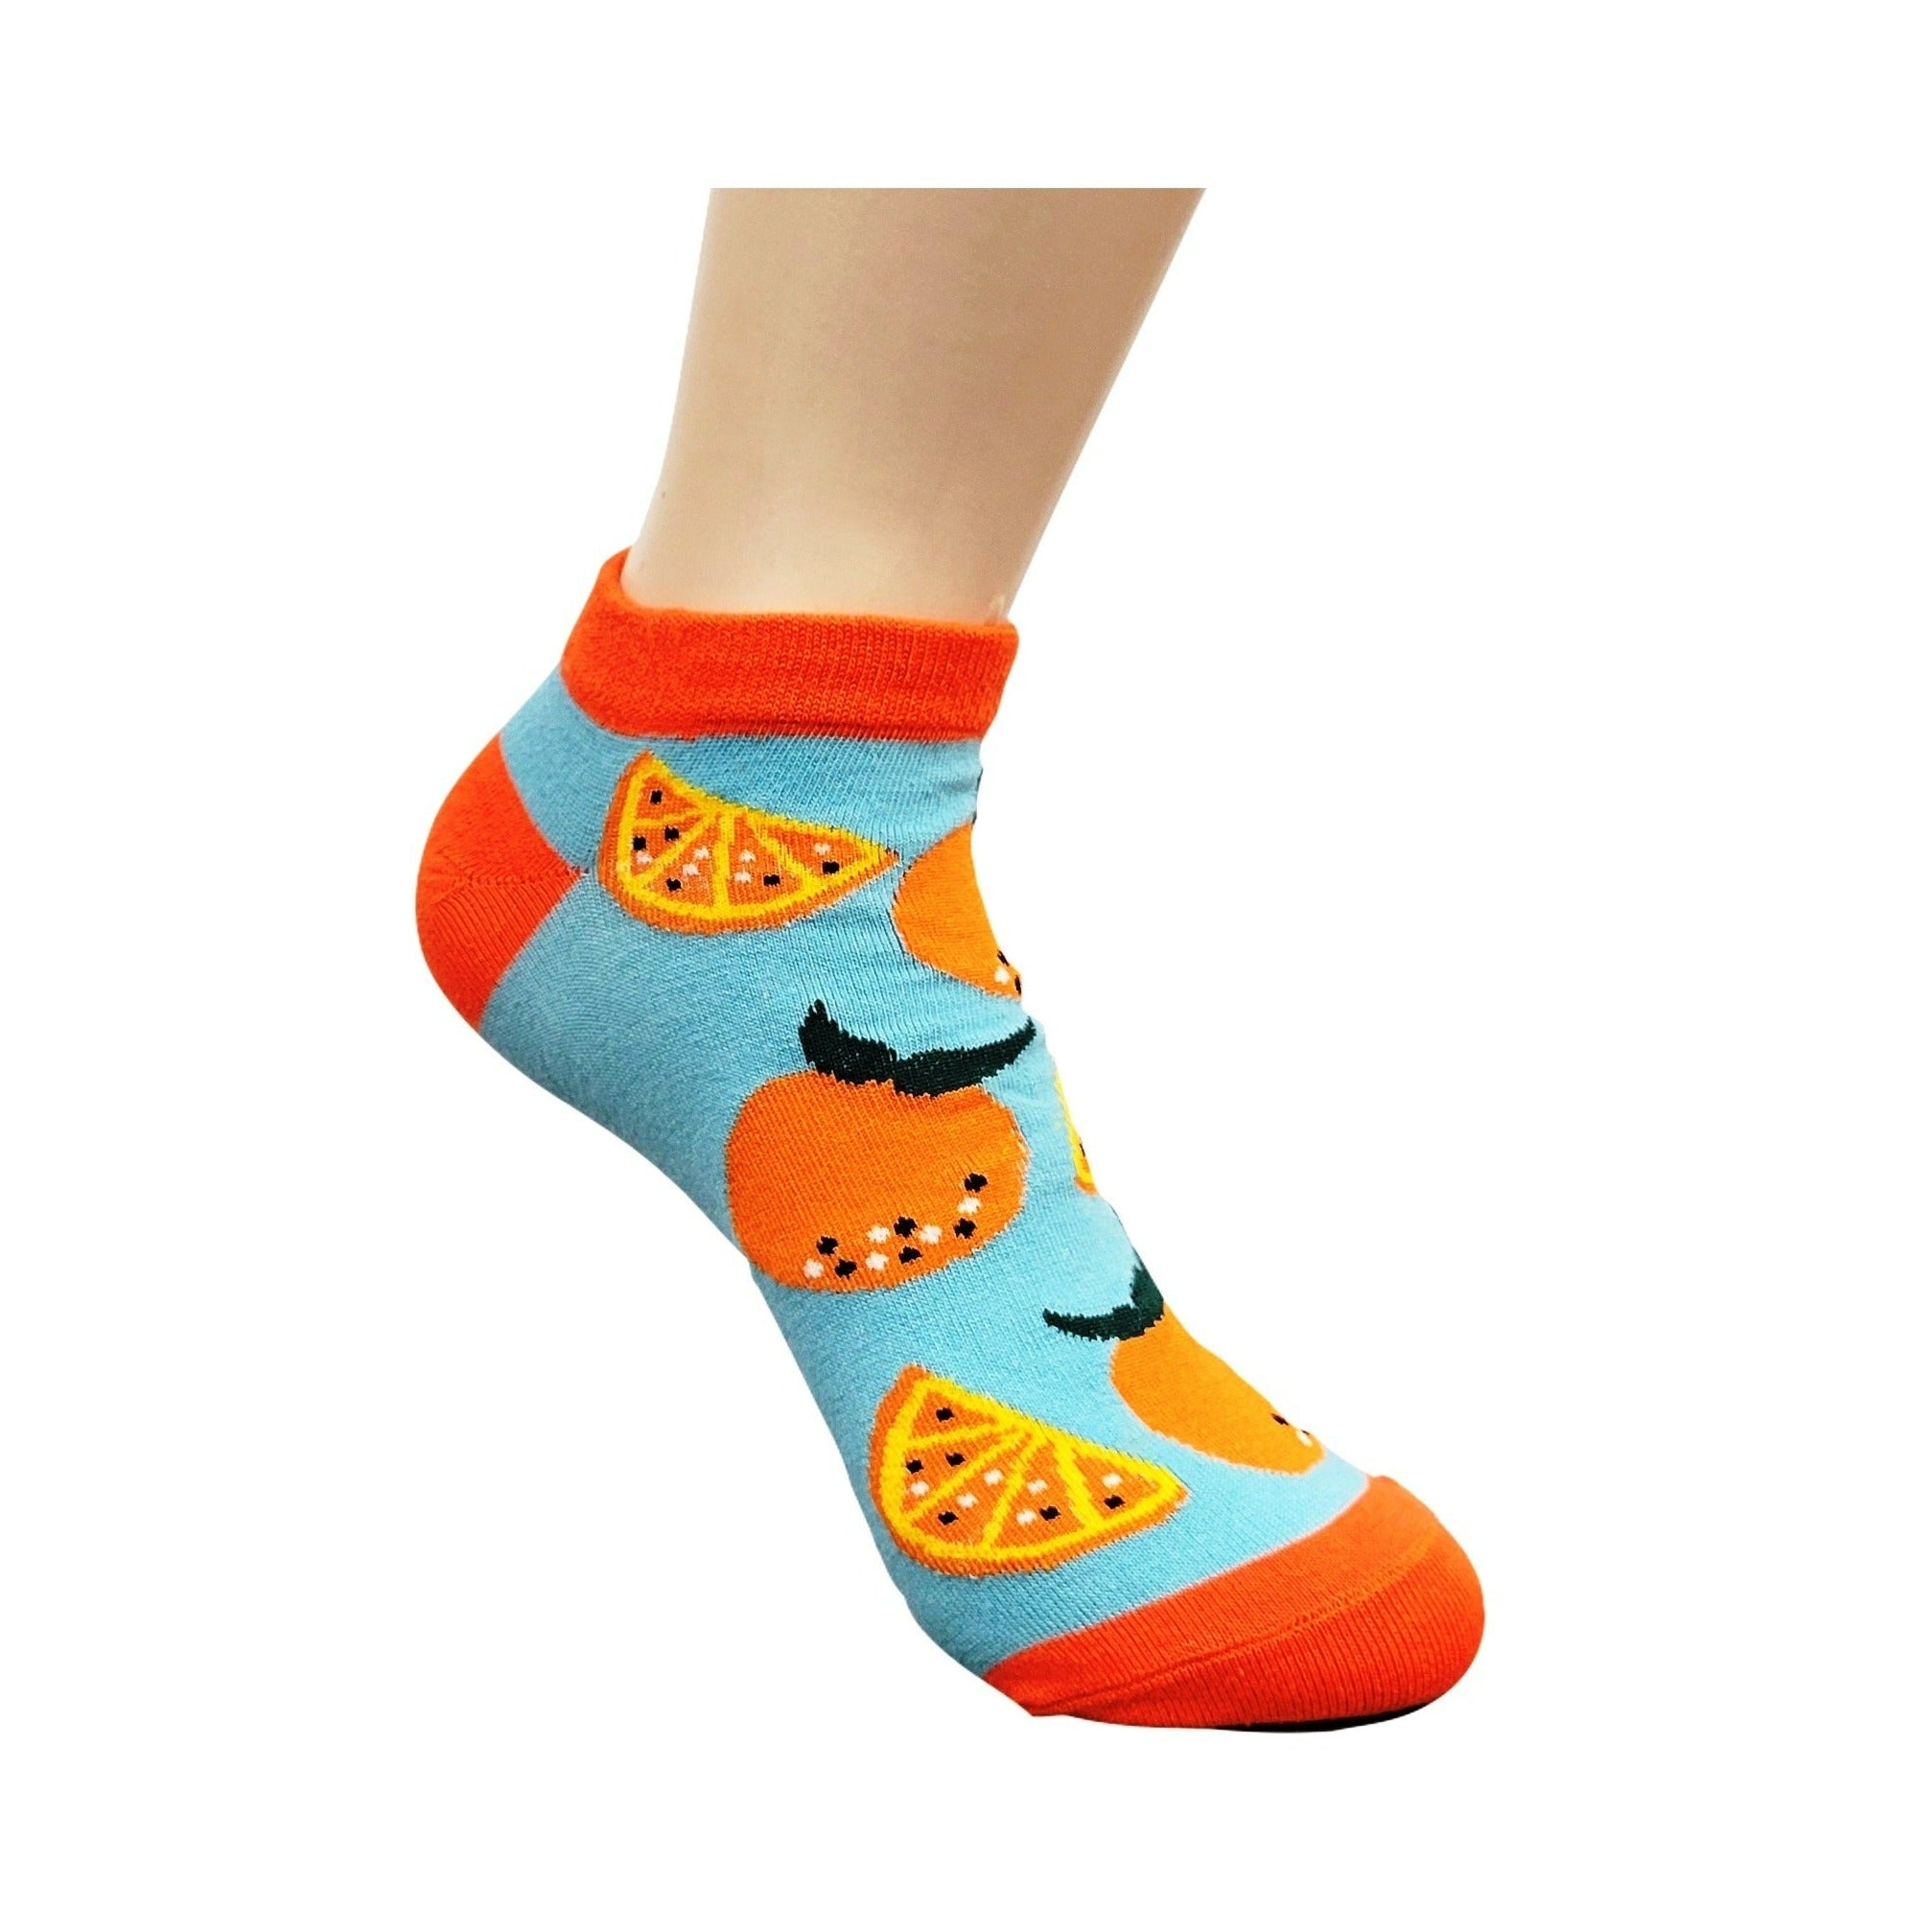 Orange Slice Patterned Ankle Socks (Adult Medium)